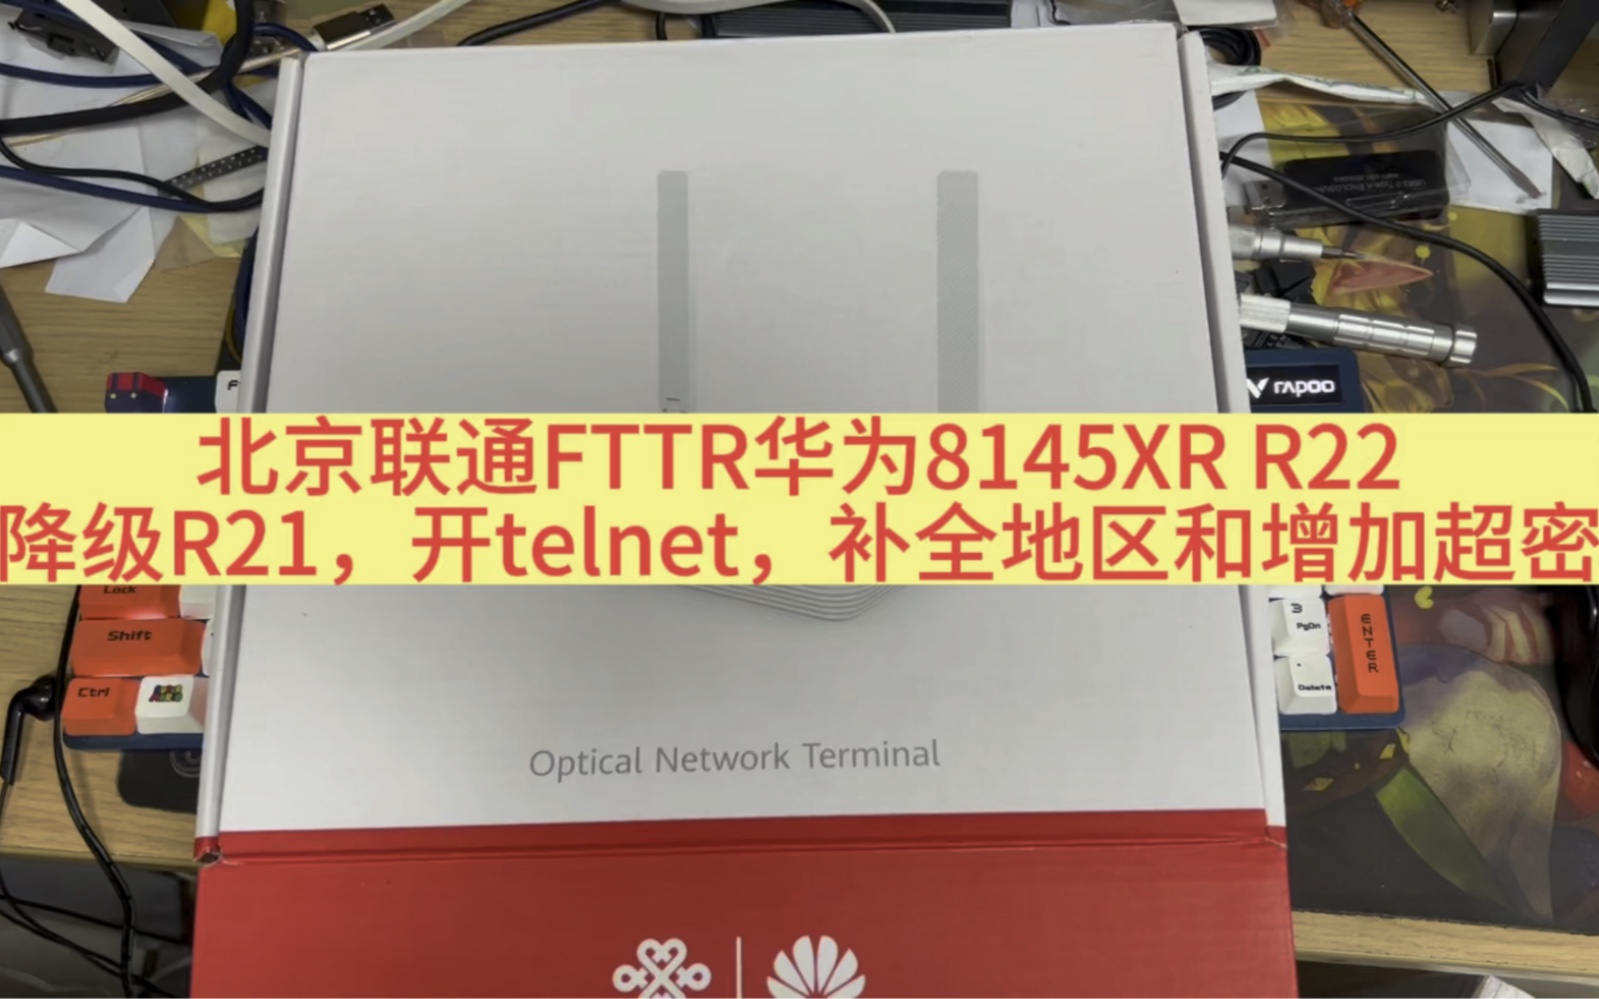 北京联通FTTR HN8145XR R22降级R21开telnet补全地区和增加超密